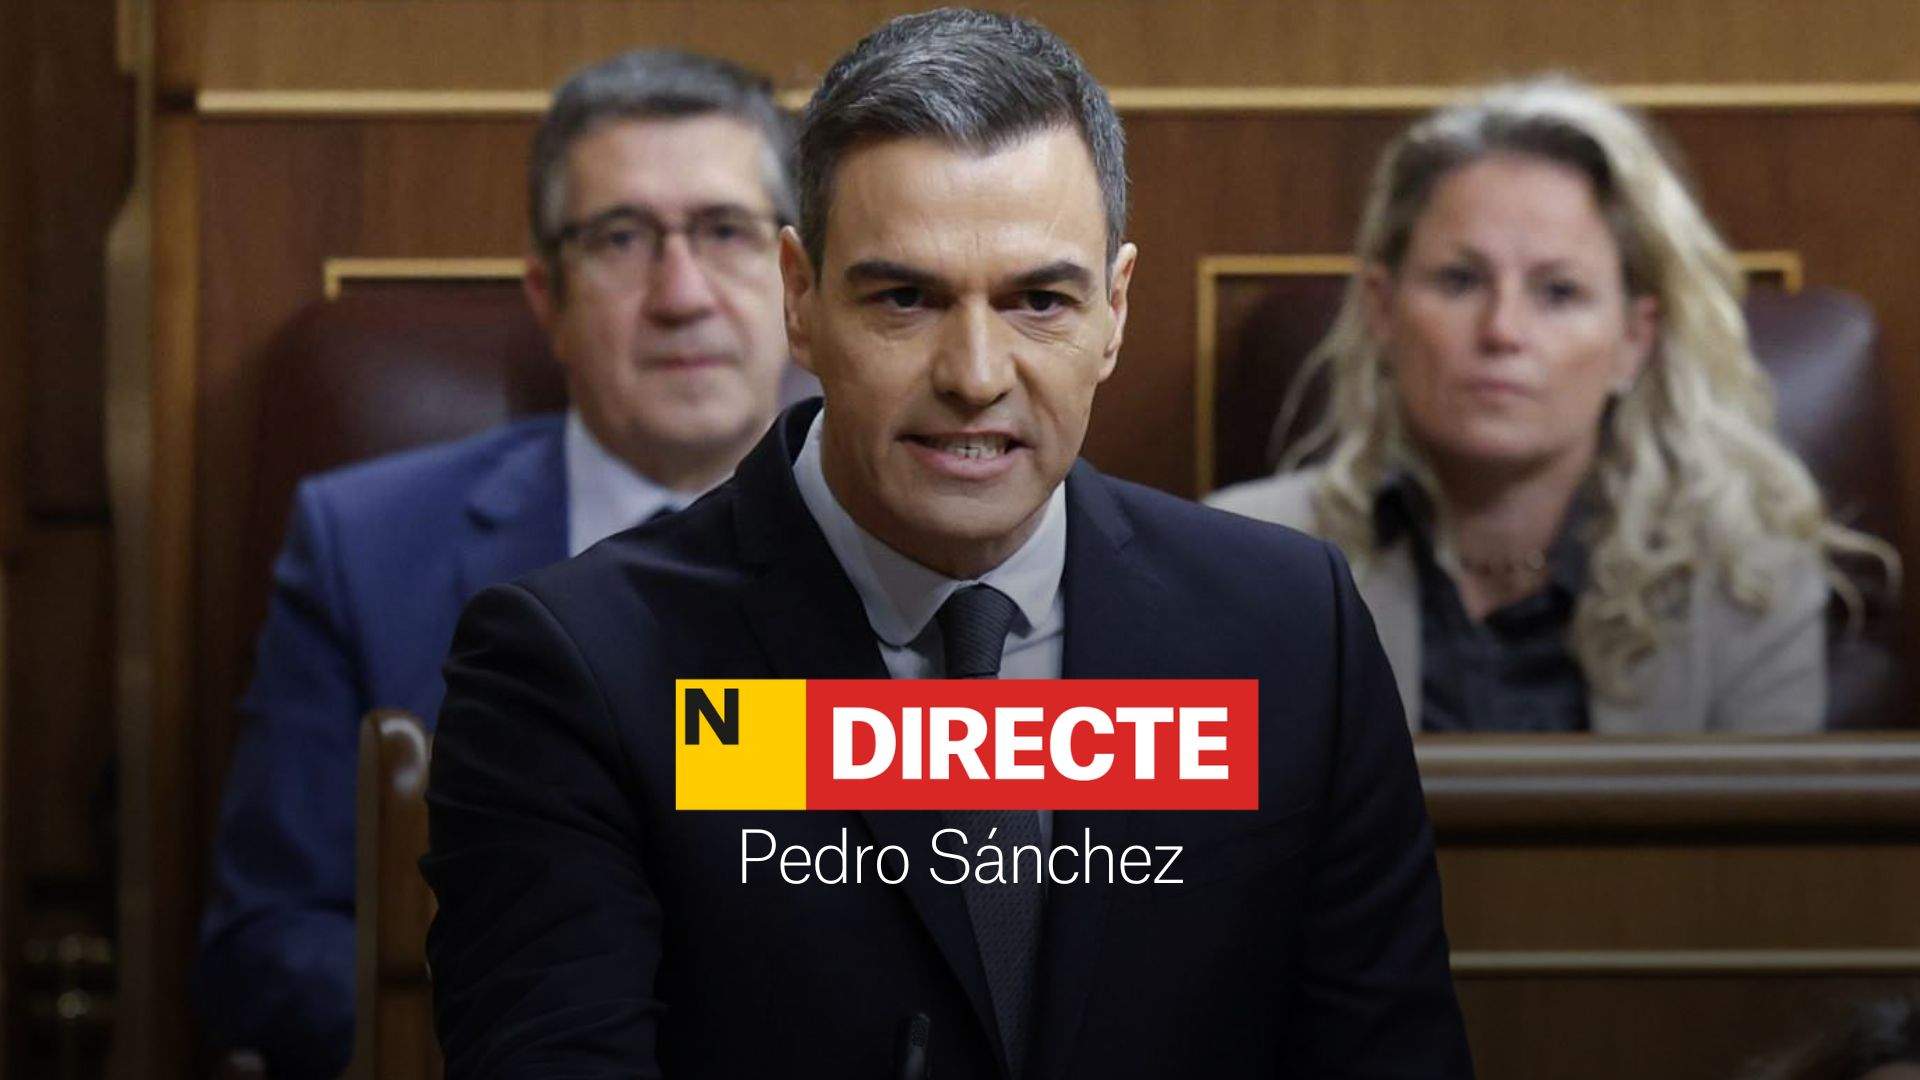 Pedro Sánchez compareix al Congrés dels Diputats, DIRECTE